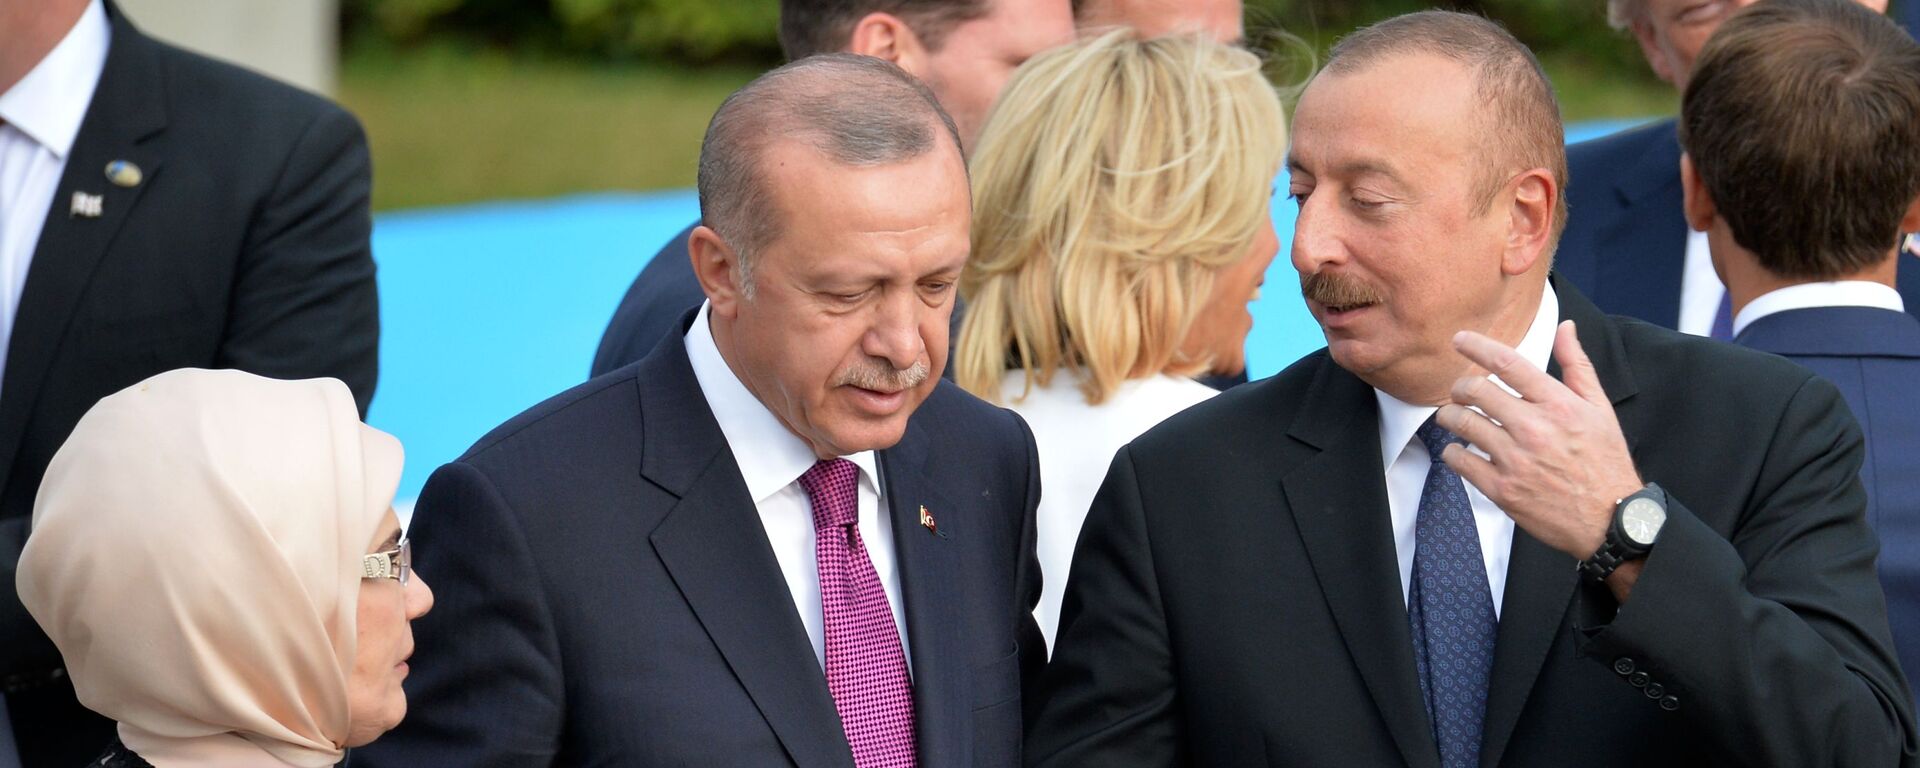 Президент Турции Реджеп Тайип Эрдоган и президент Азербайджана Ильхам Алиев (справа) на саммите НАТО в Брюсселе (11 июля 2018). - Sputnik Արմենիա, 1920, 11.06.2021